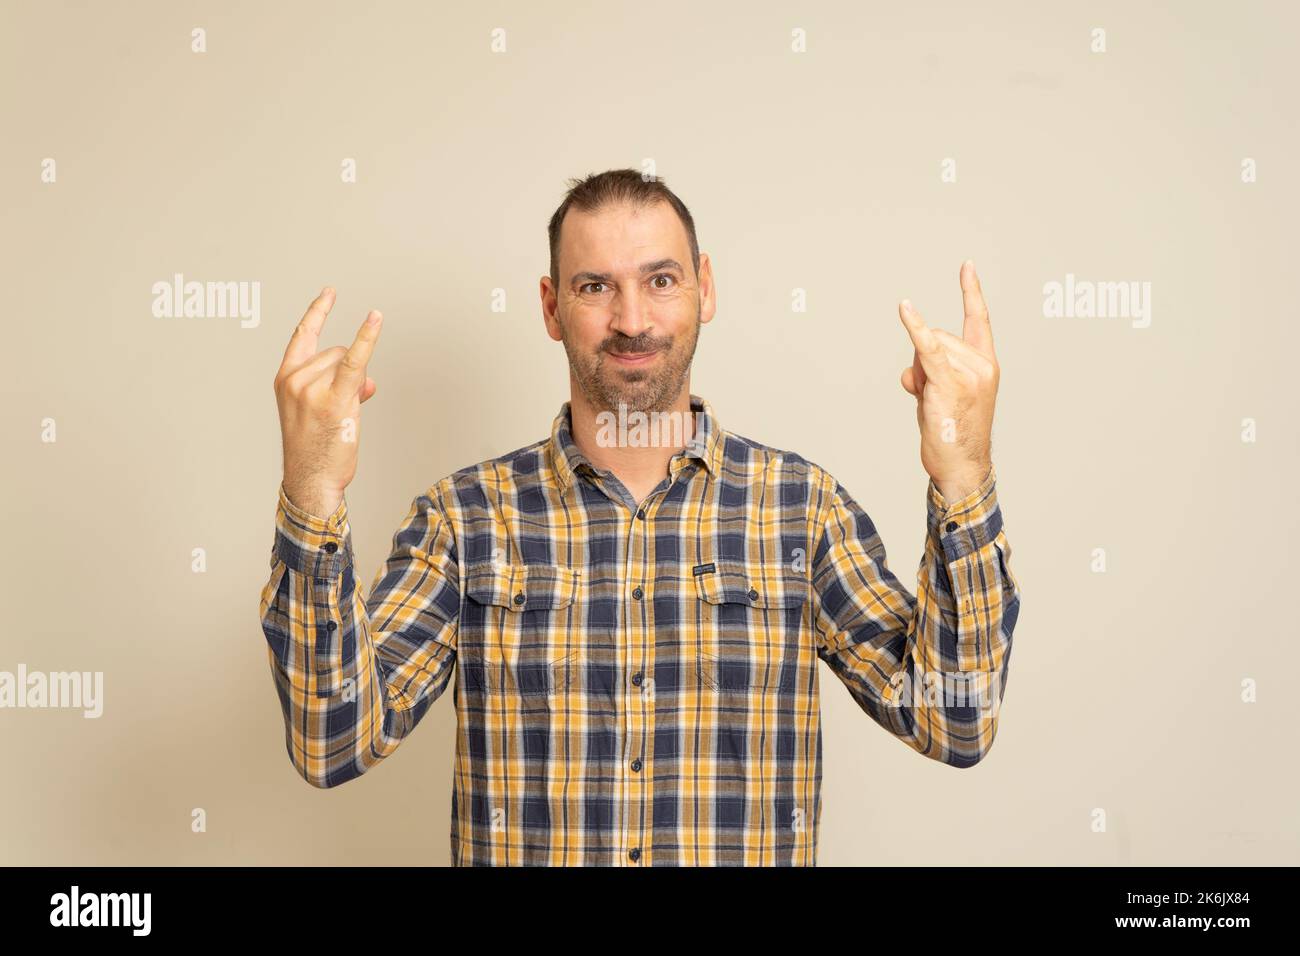 Le portrait d'un homme sur fond beige montre un geste avec ses mains Rock n Roll. Le concept de langage corporel. Banque D'Images